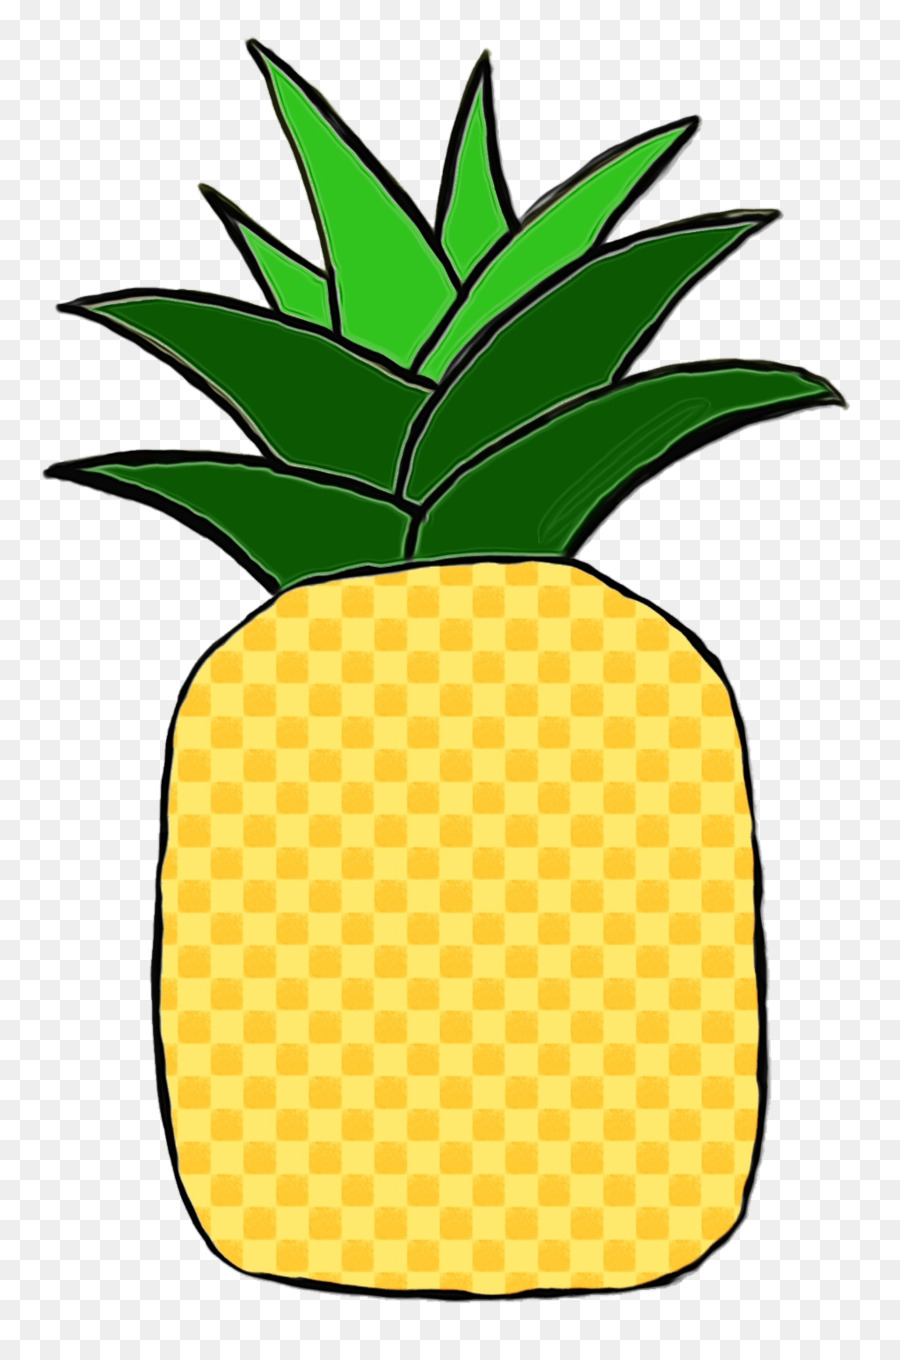 Illustrazione di clipart dell'illustrazione dei grafici della rete portatile dell'ananas - 